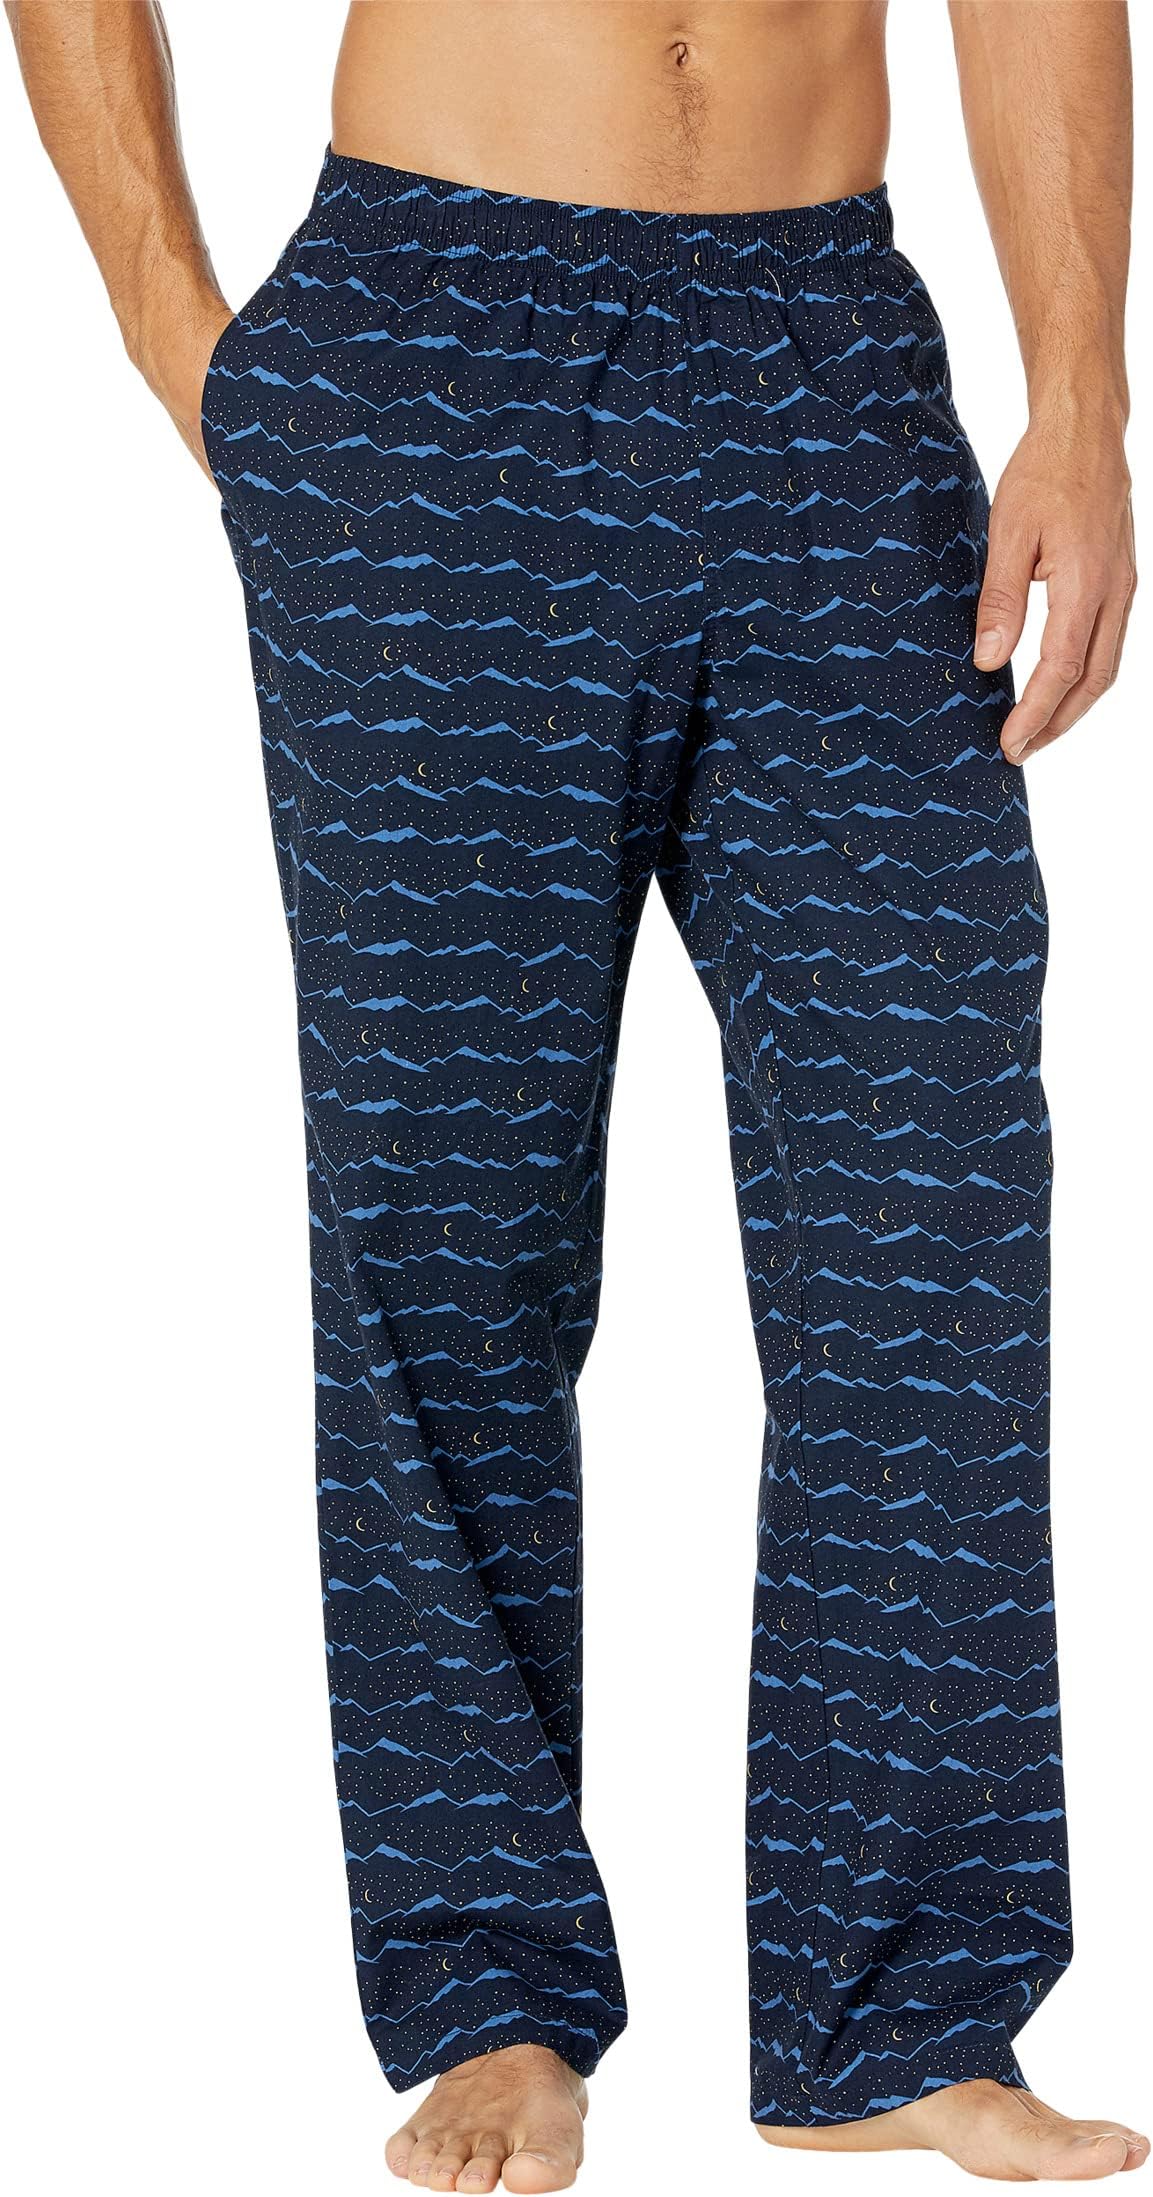 Комфортные спальные брюки из эластичной ткани стандартного размера L.L.Bean, цвет Classic Navy Night Mountain